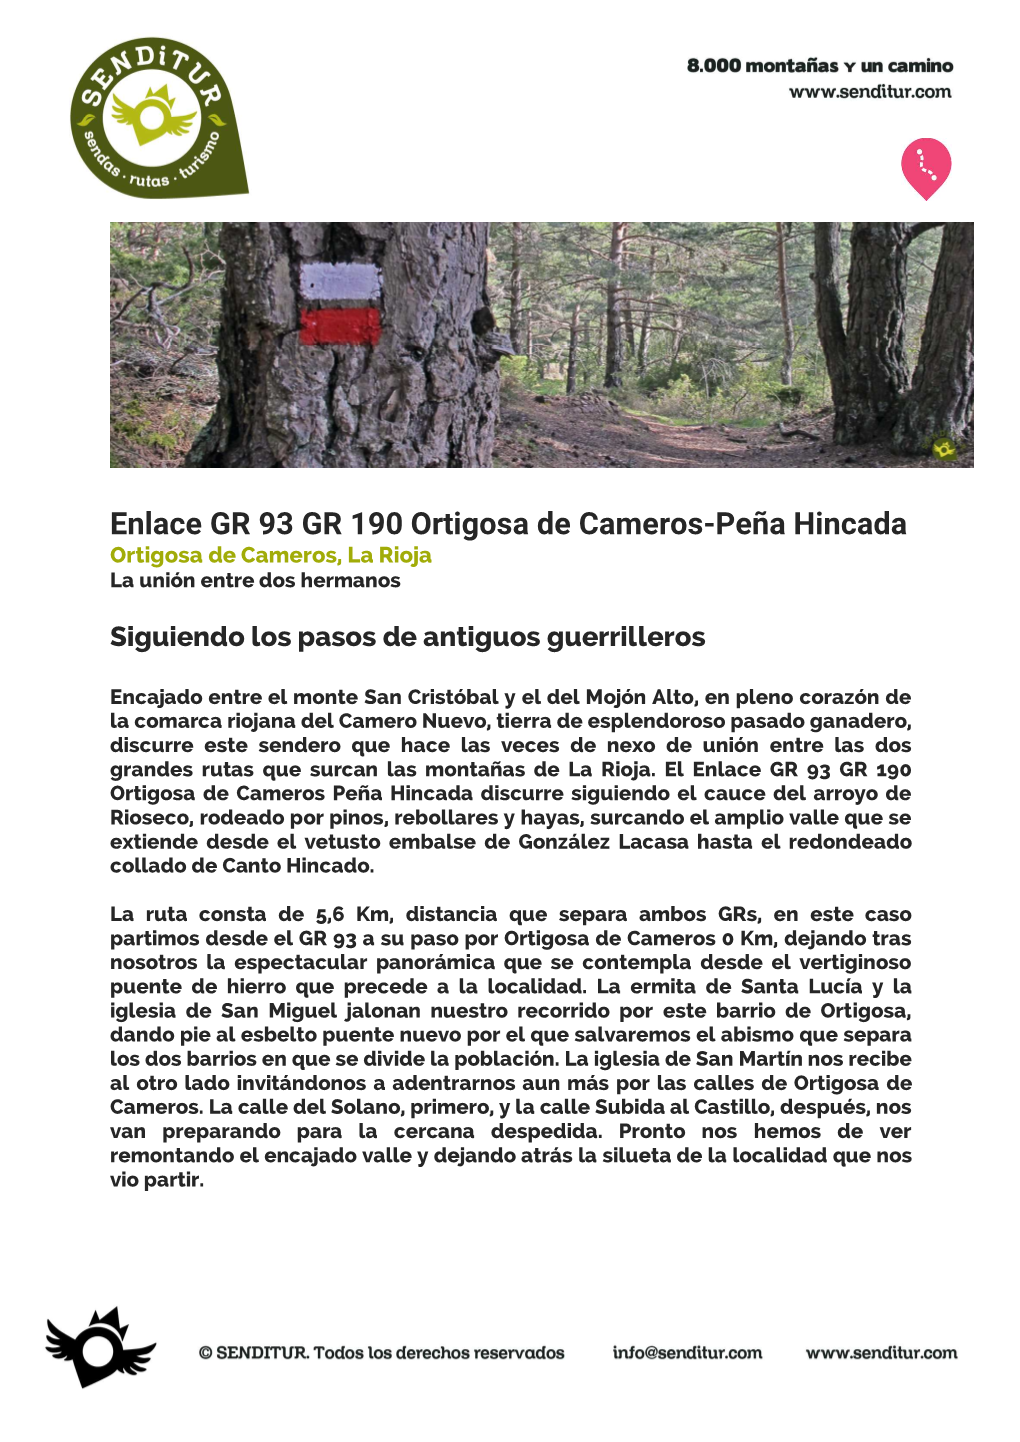 Enlace GR 93 GR 190 Ortigosa De Cameros-Peña Hincada.SENDITUR